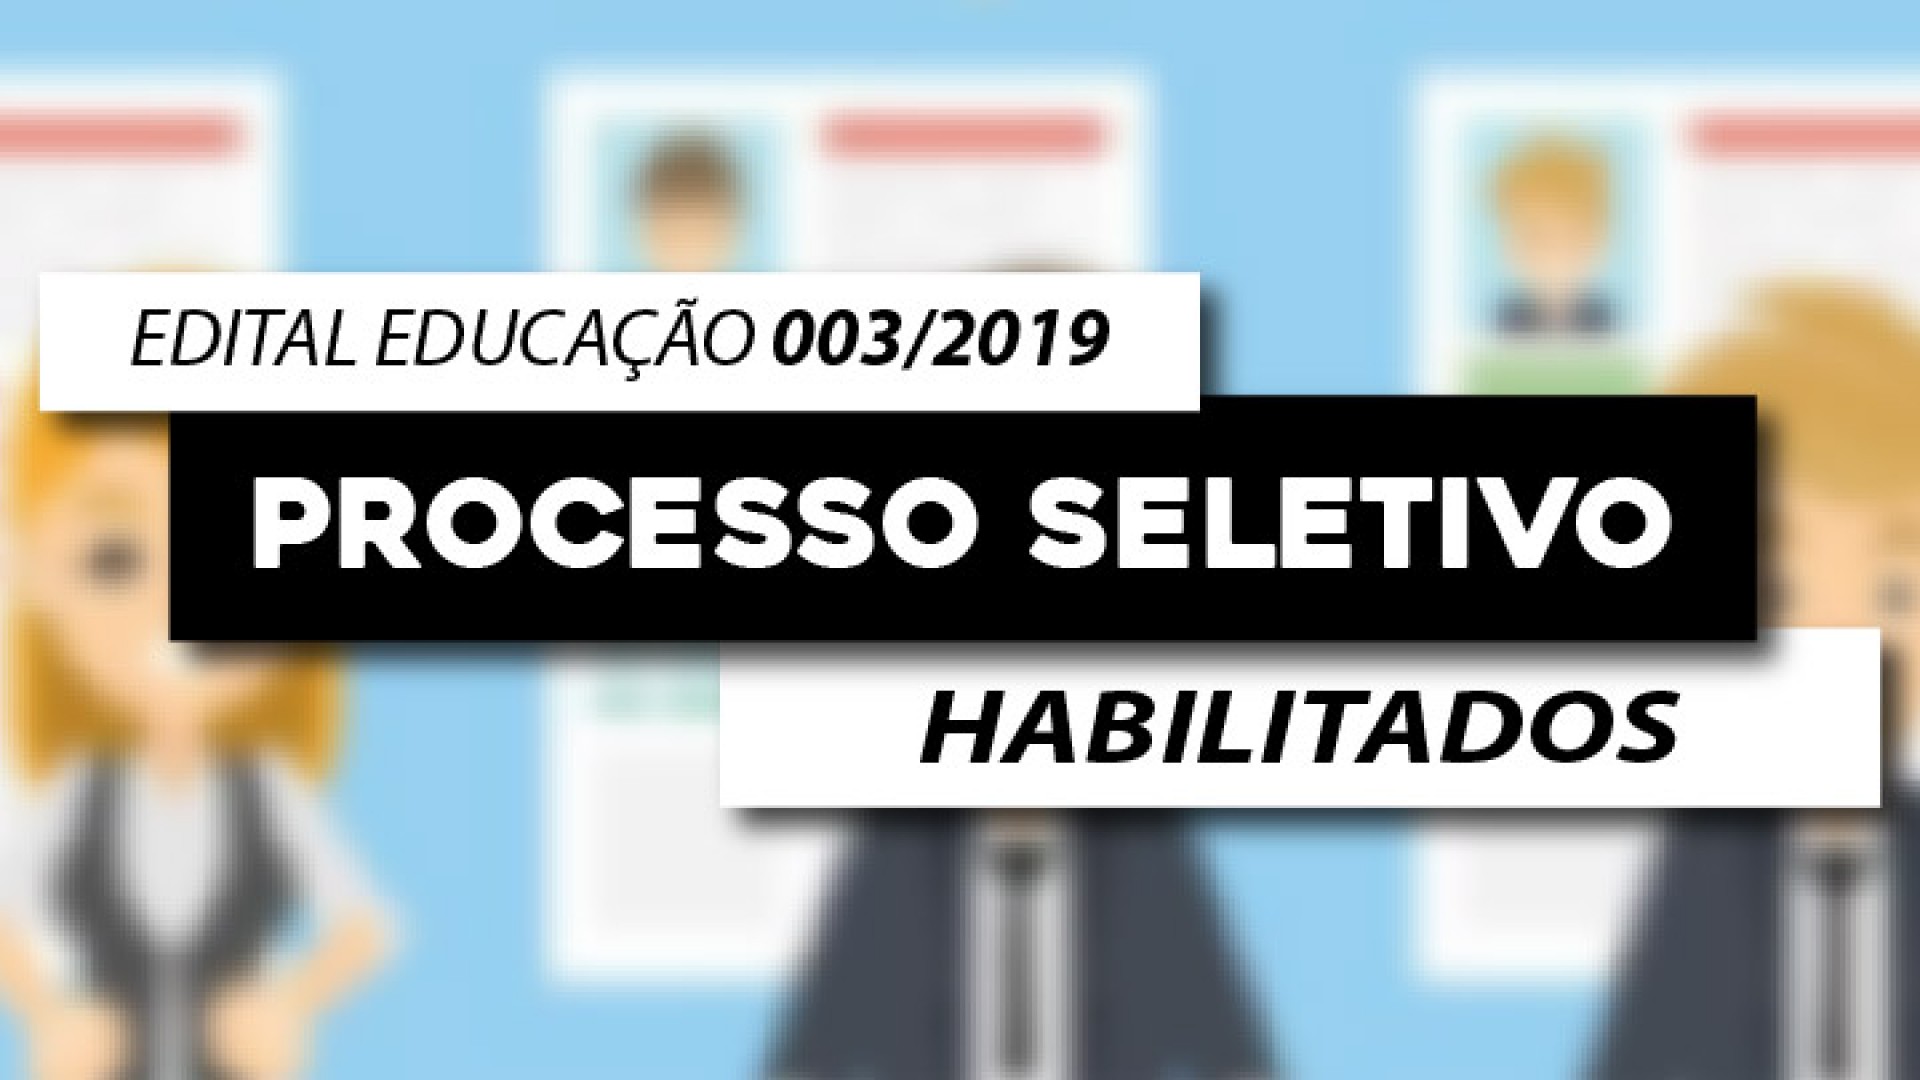 EDITAL EDUCAÇÃO Nº 003/2019 - HABILITADOS